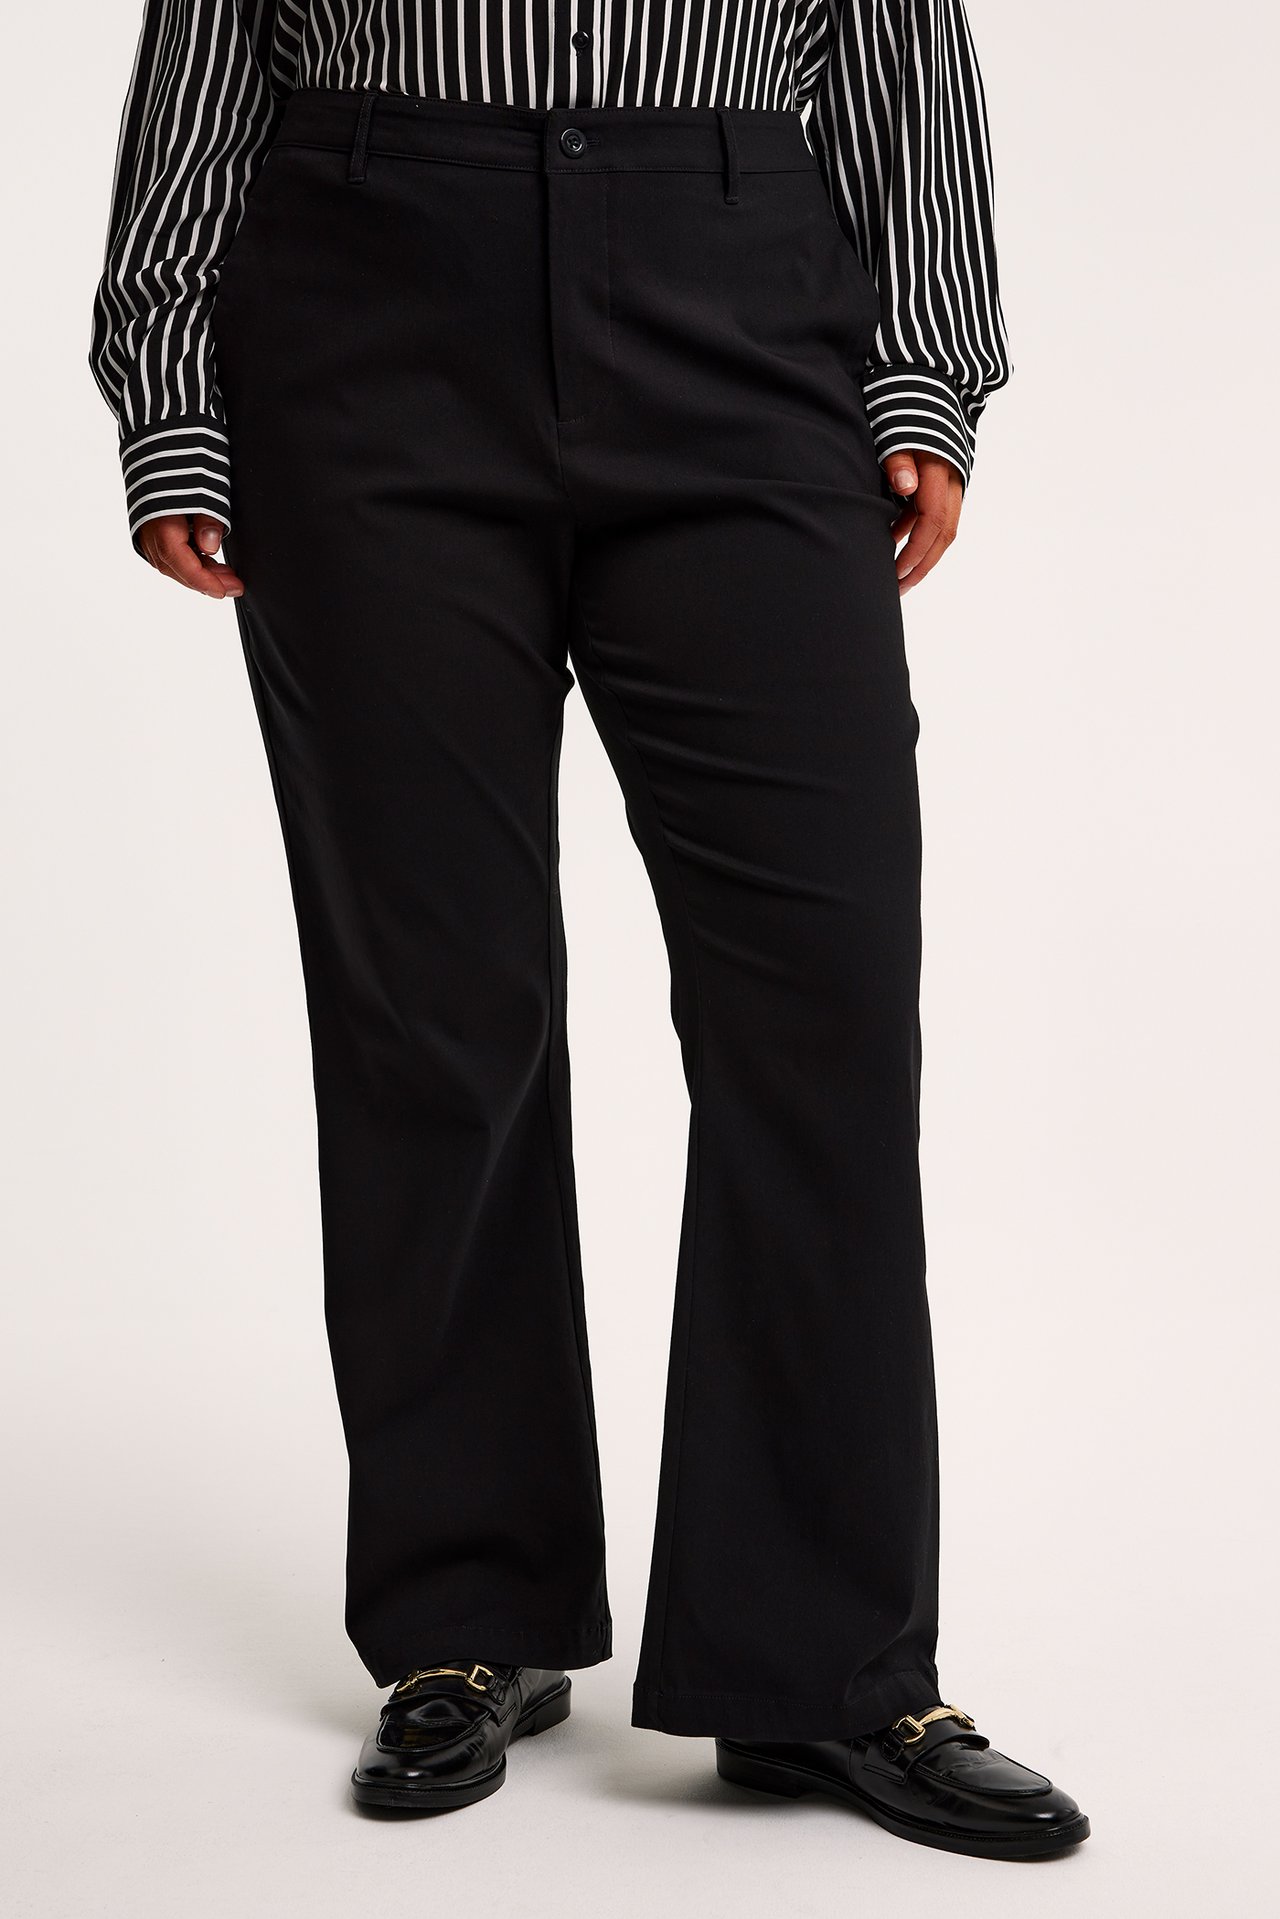 Spodnie garniturowe typu dzwony - Czarne - 2